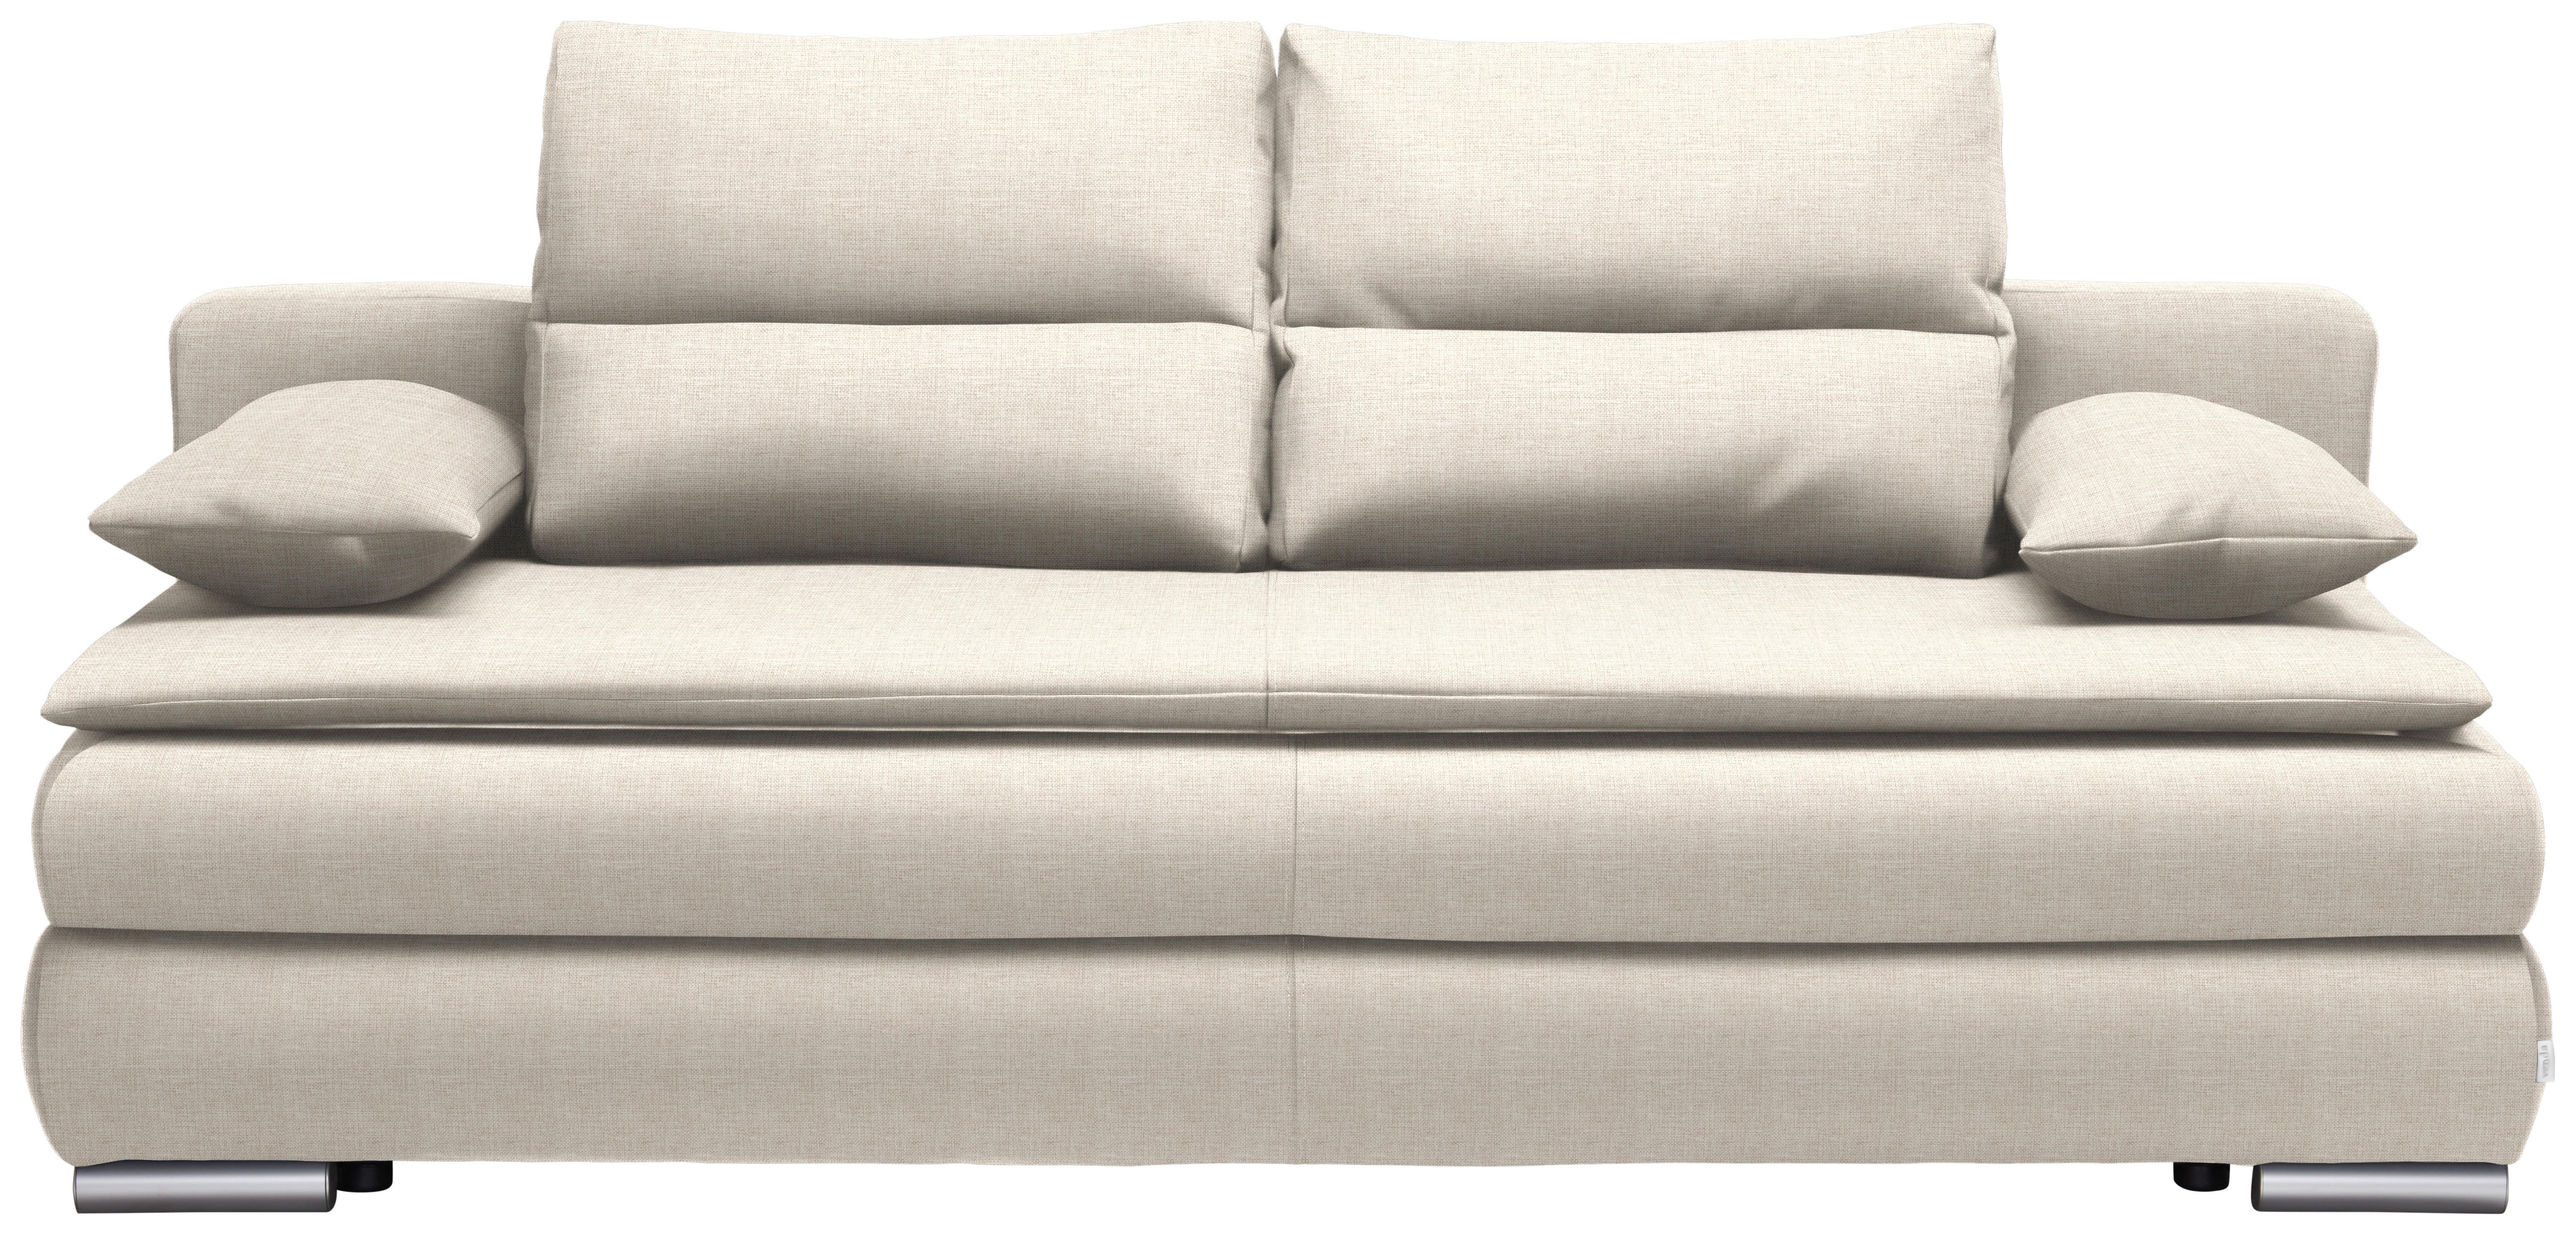 KANAPÉÁGY Textil Bézs  - Bézs/Ezüst, Konventionell, Műanyag/Textil (207/94/90cm) - Venda